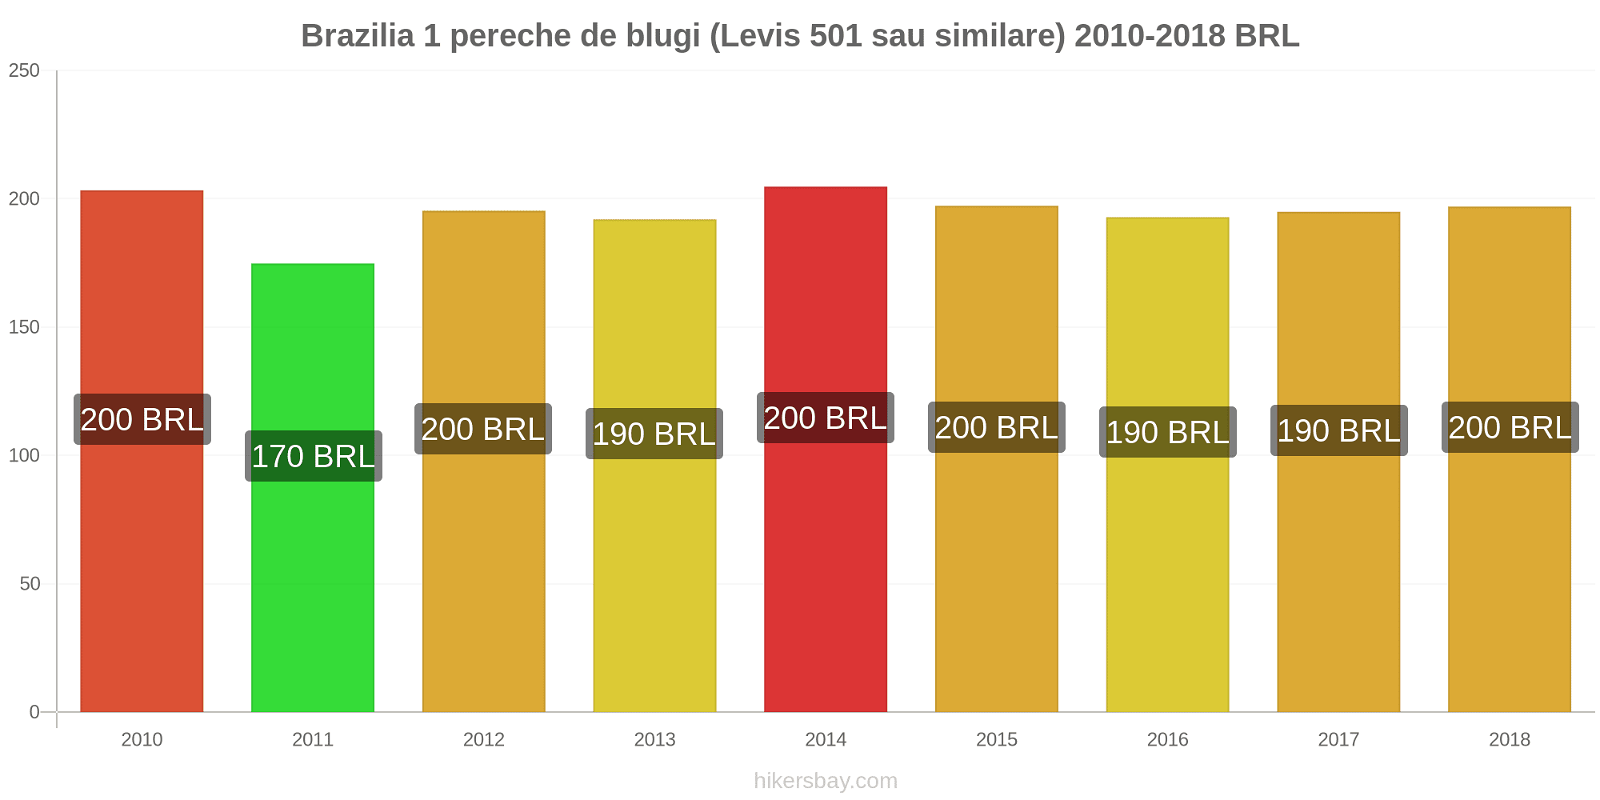 Brazilia schimbări de prețuri 1 pereche de blugi (Levis 501 sau similare) hikersbay.com